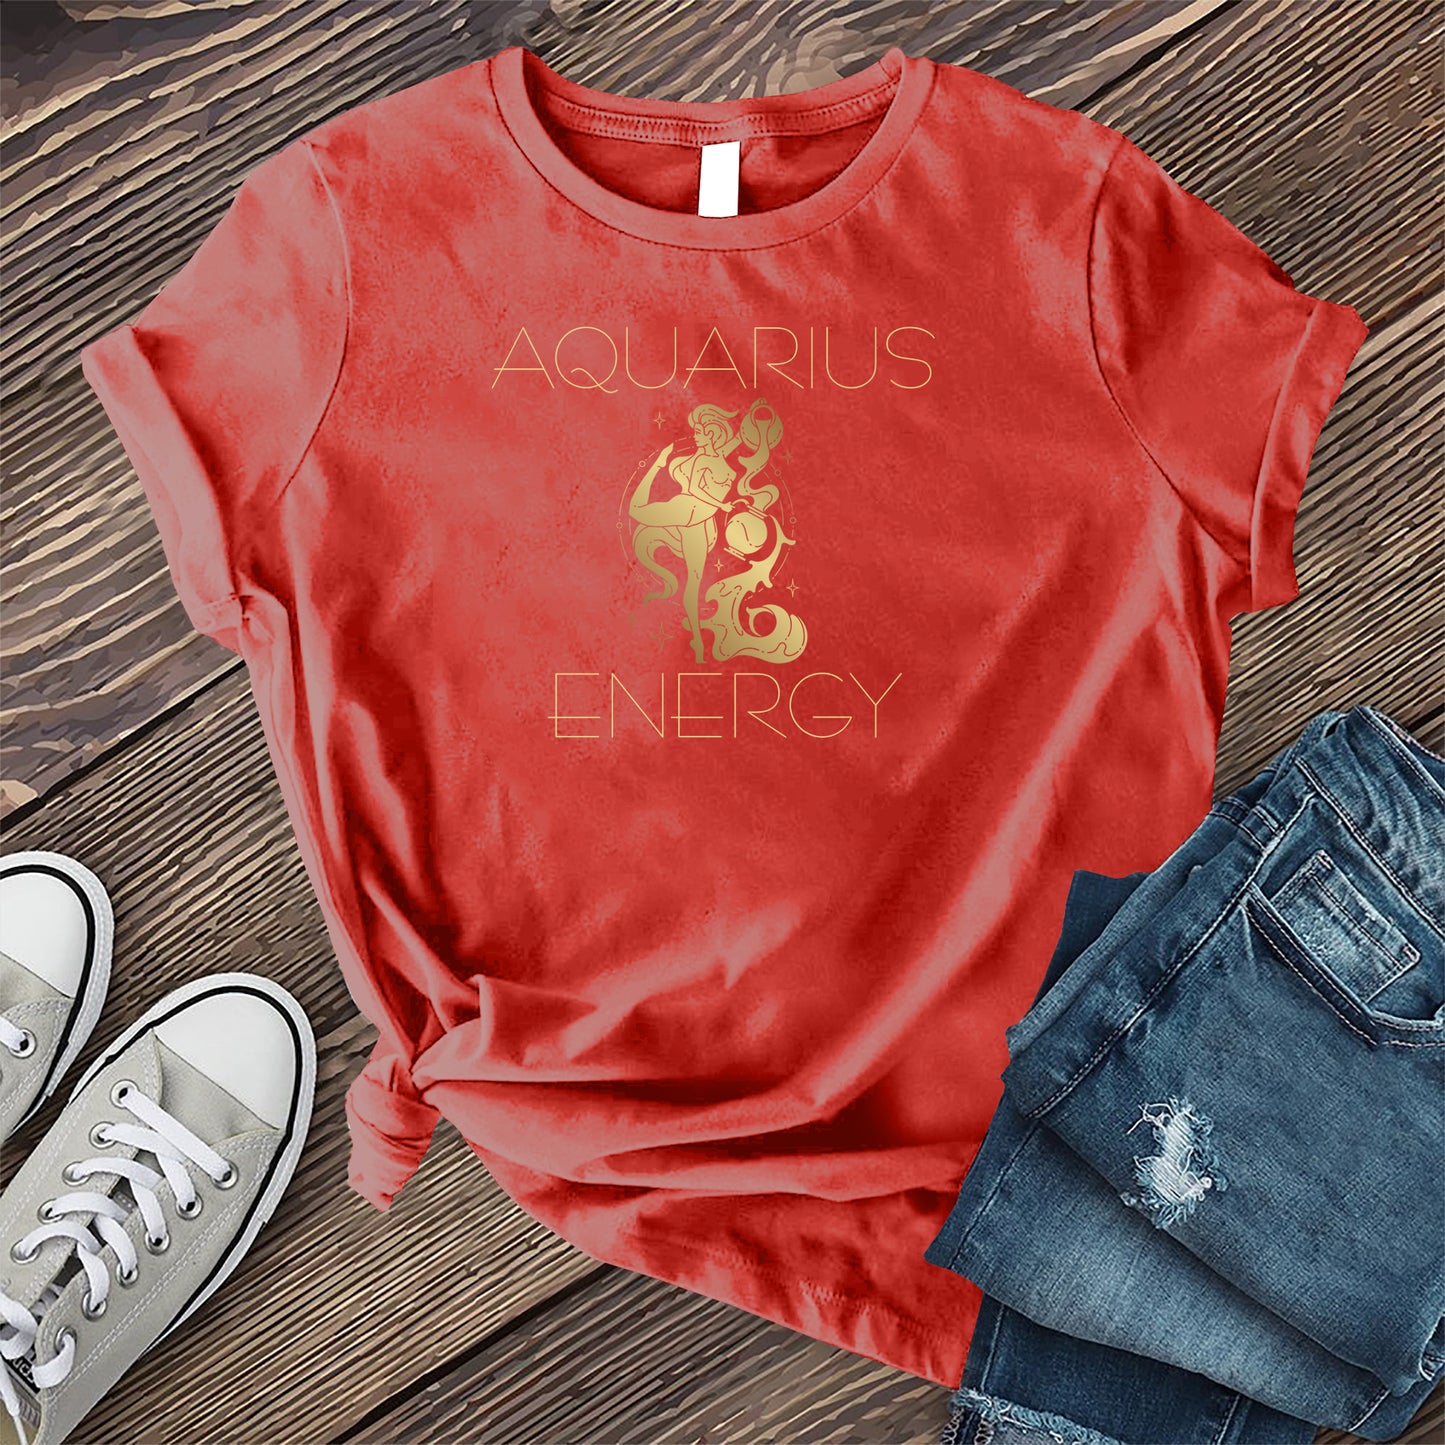 Aquarius Energy T-shirt